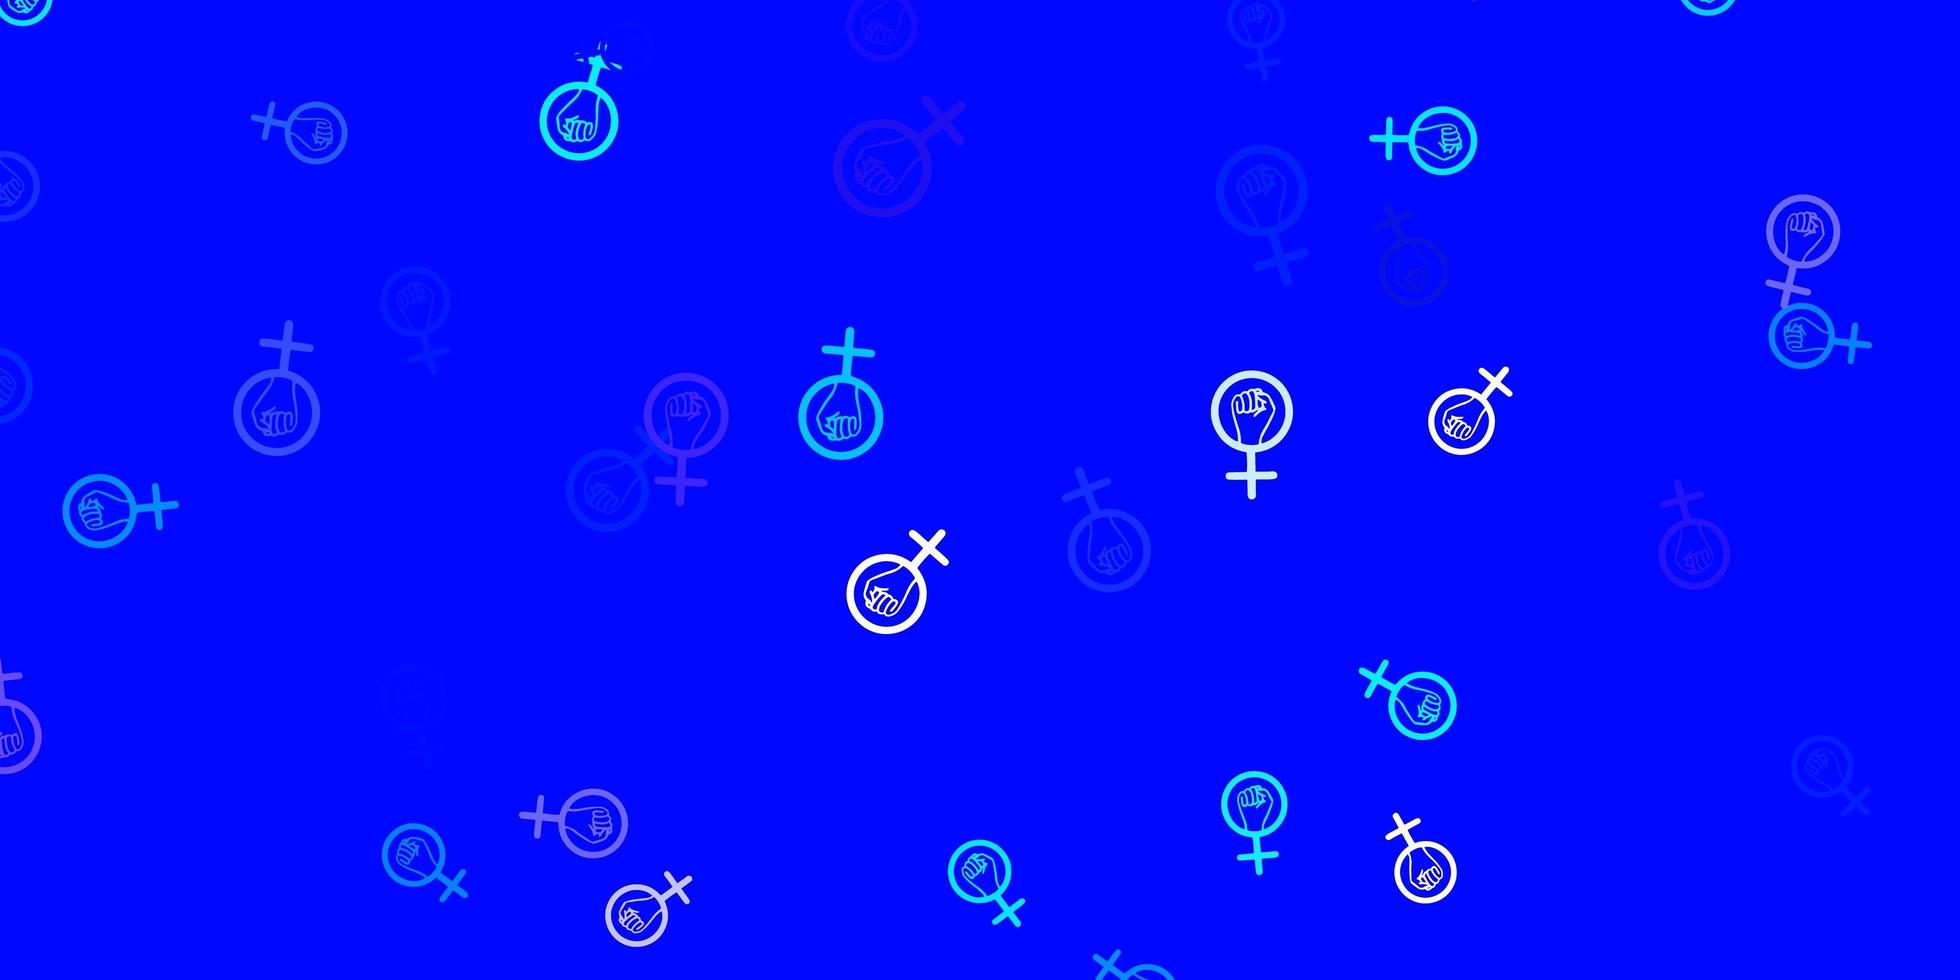 ljusrosa, blå vektorbakgrund med kvinnasymboler. vektor